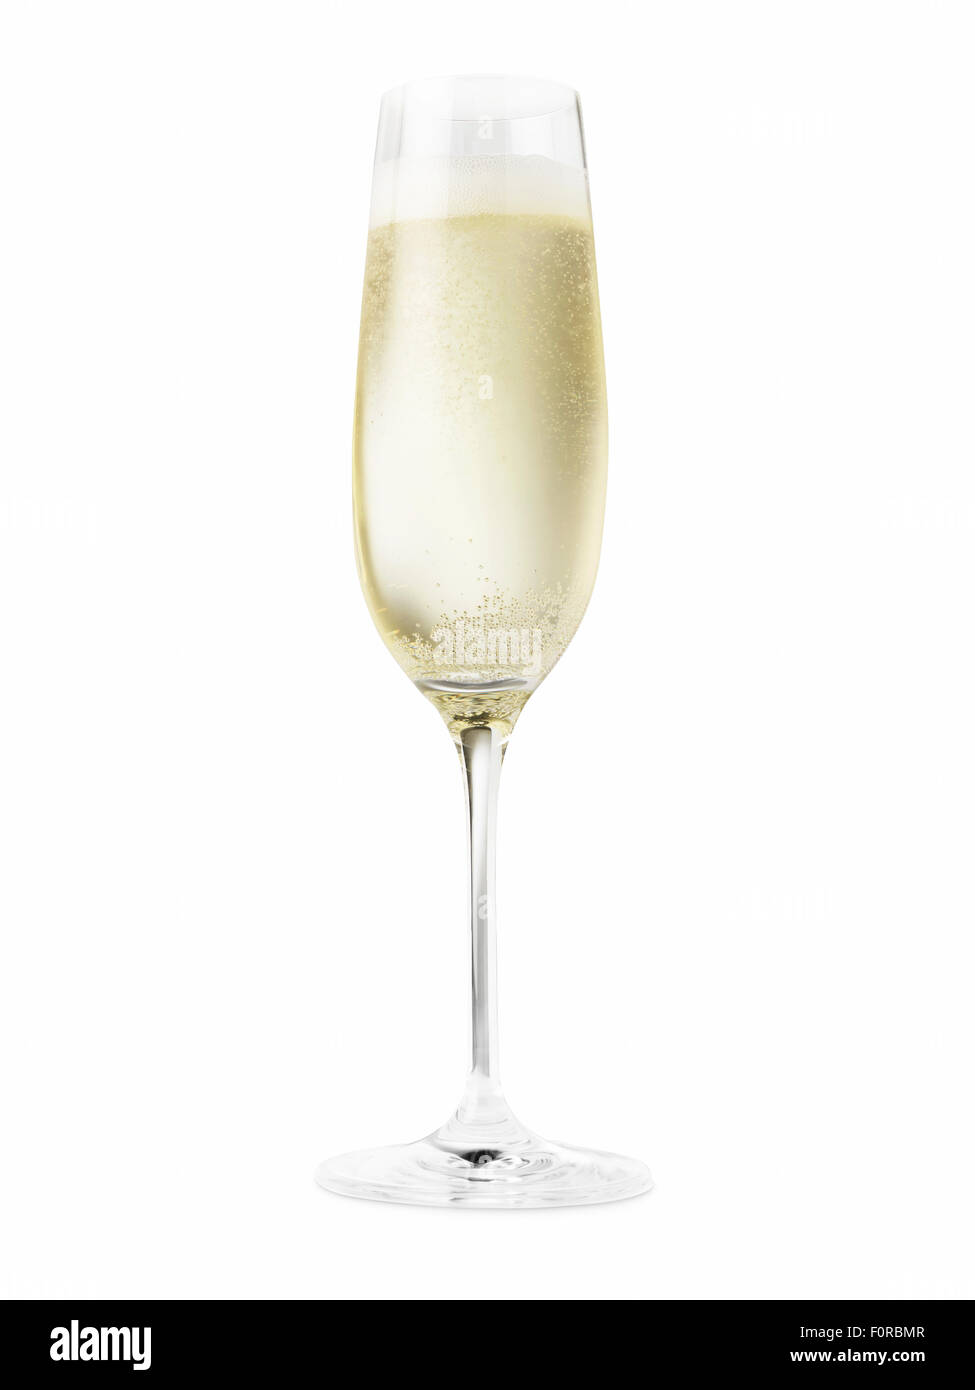 Prise d'un verre à champagne plein de champagne découper sur un fond blanc. La nature du liquide réfrigéré a donné à l'affiche Banque D'Images